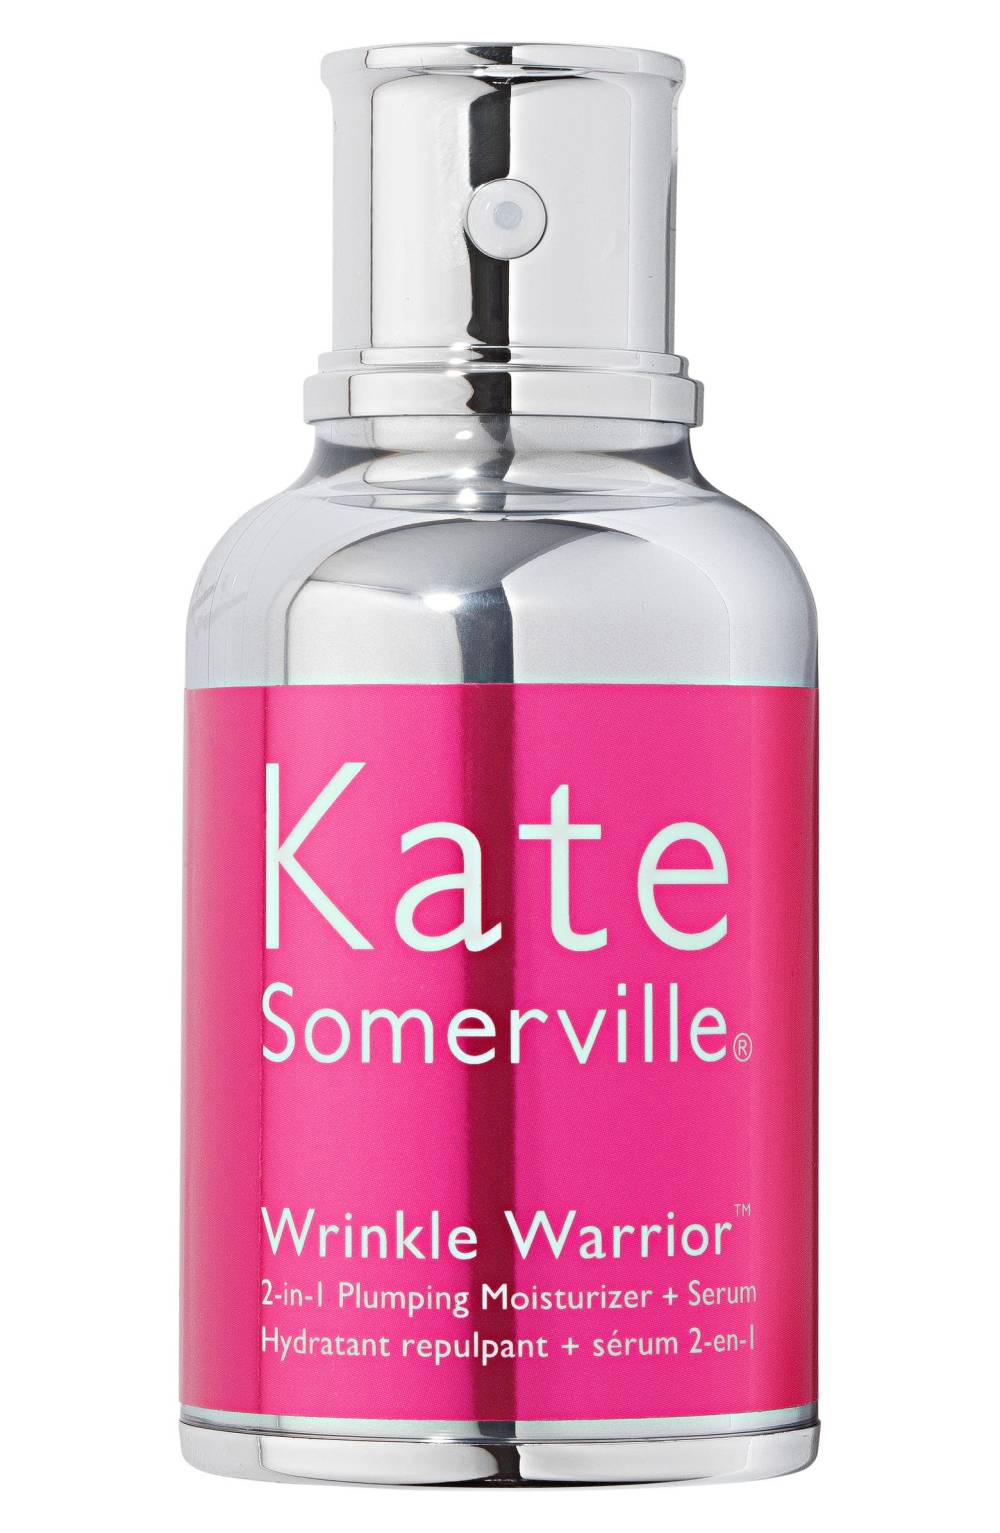 Kate Sommerville Wrinkle Warrior™ 2-in-1 Plumping Moisturizer + Serum